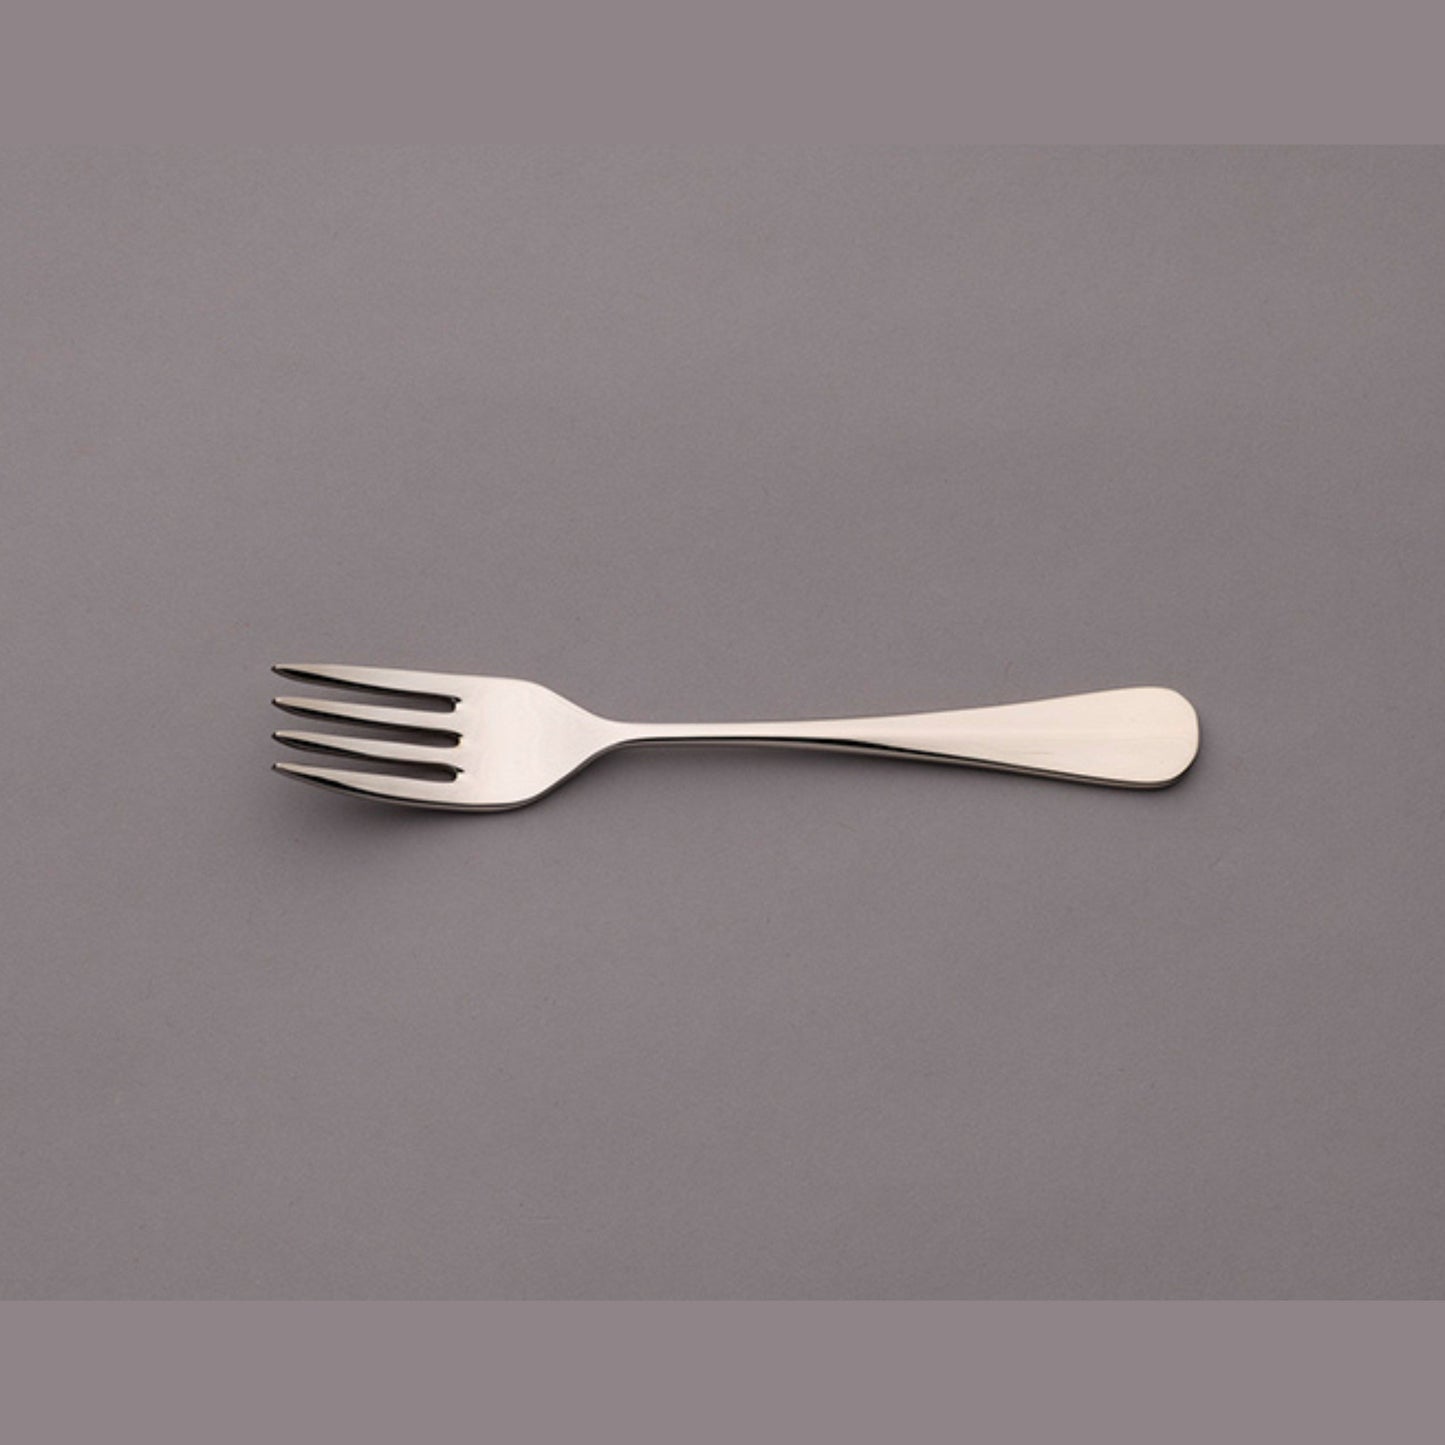 Grecian stainless steel flatware cutlery